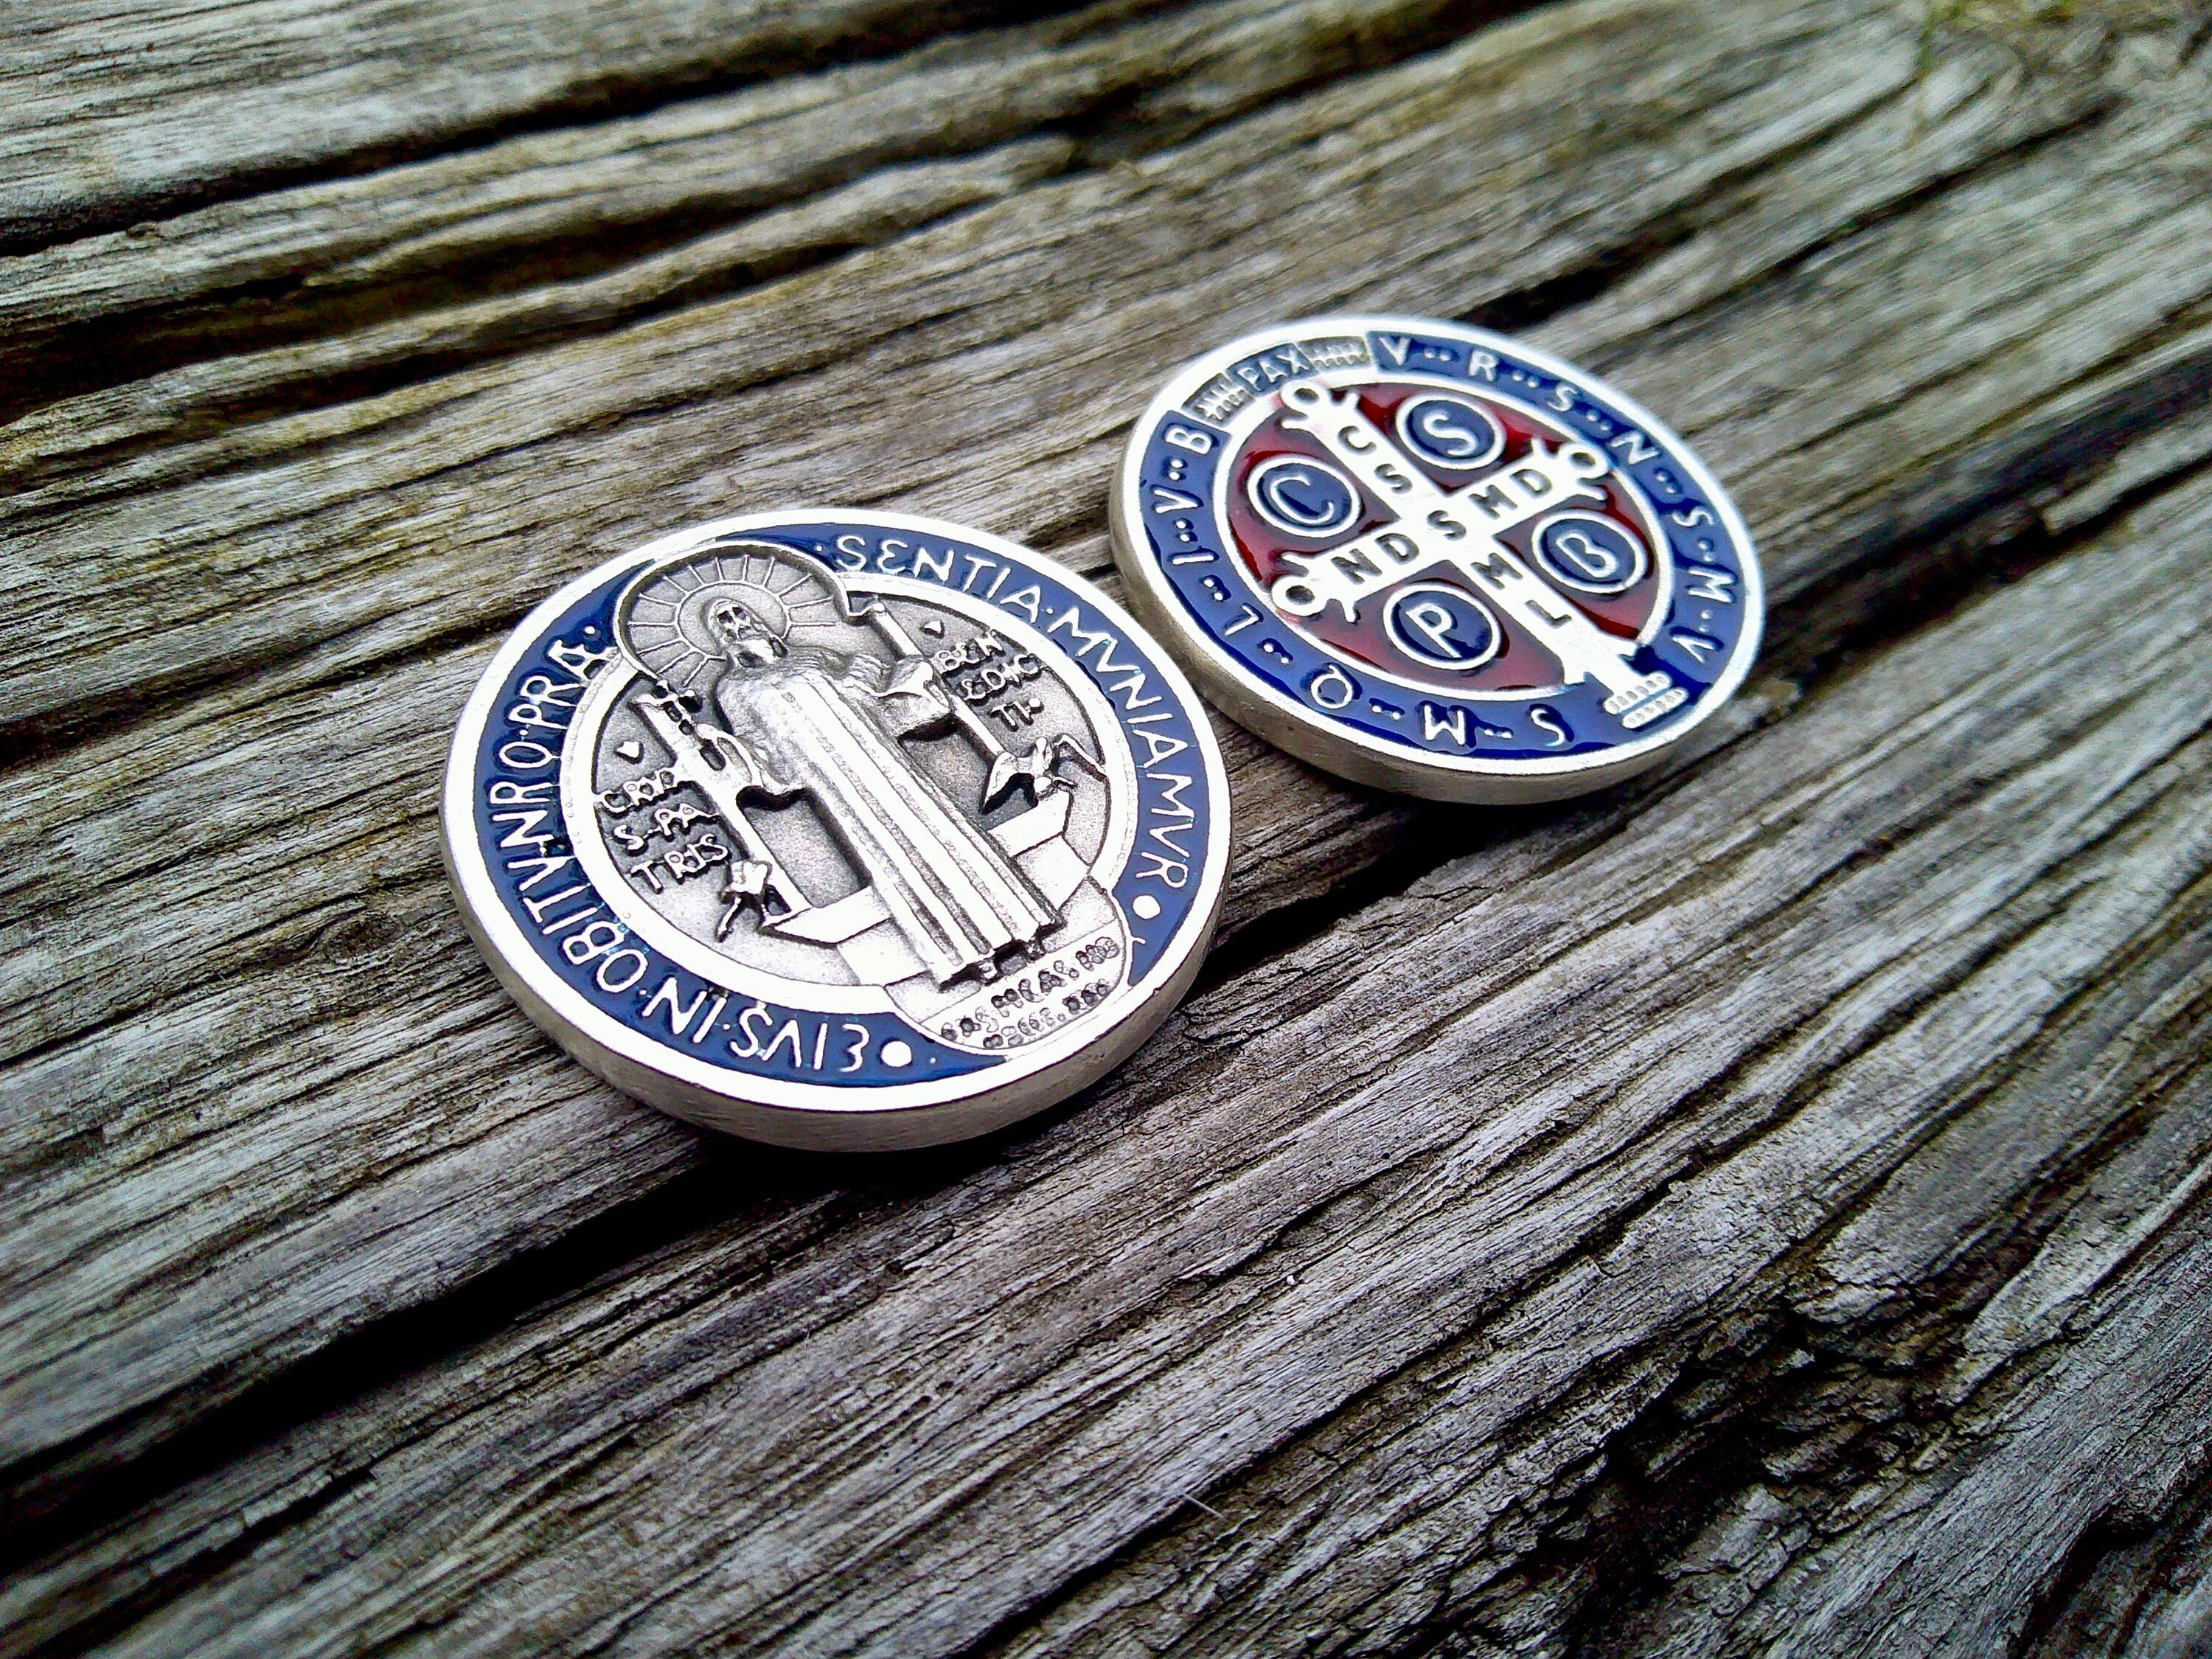 St Benedict medal xl meda Saint Benedict medal, Christian medal